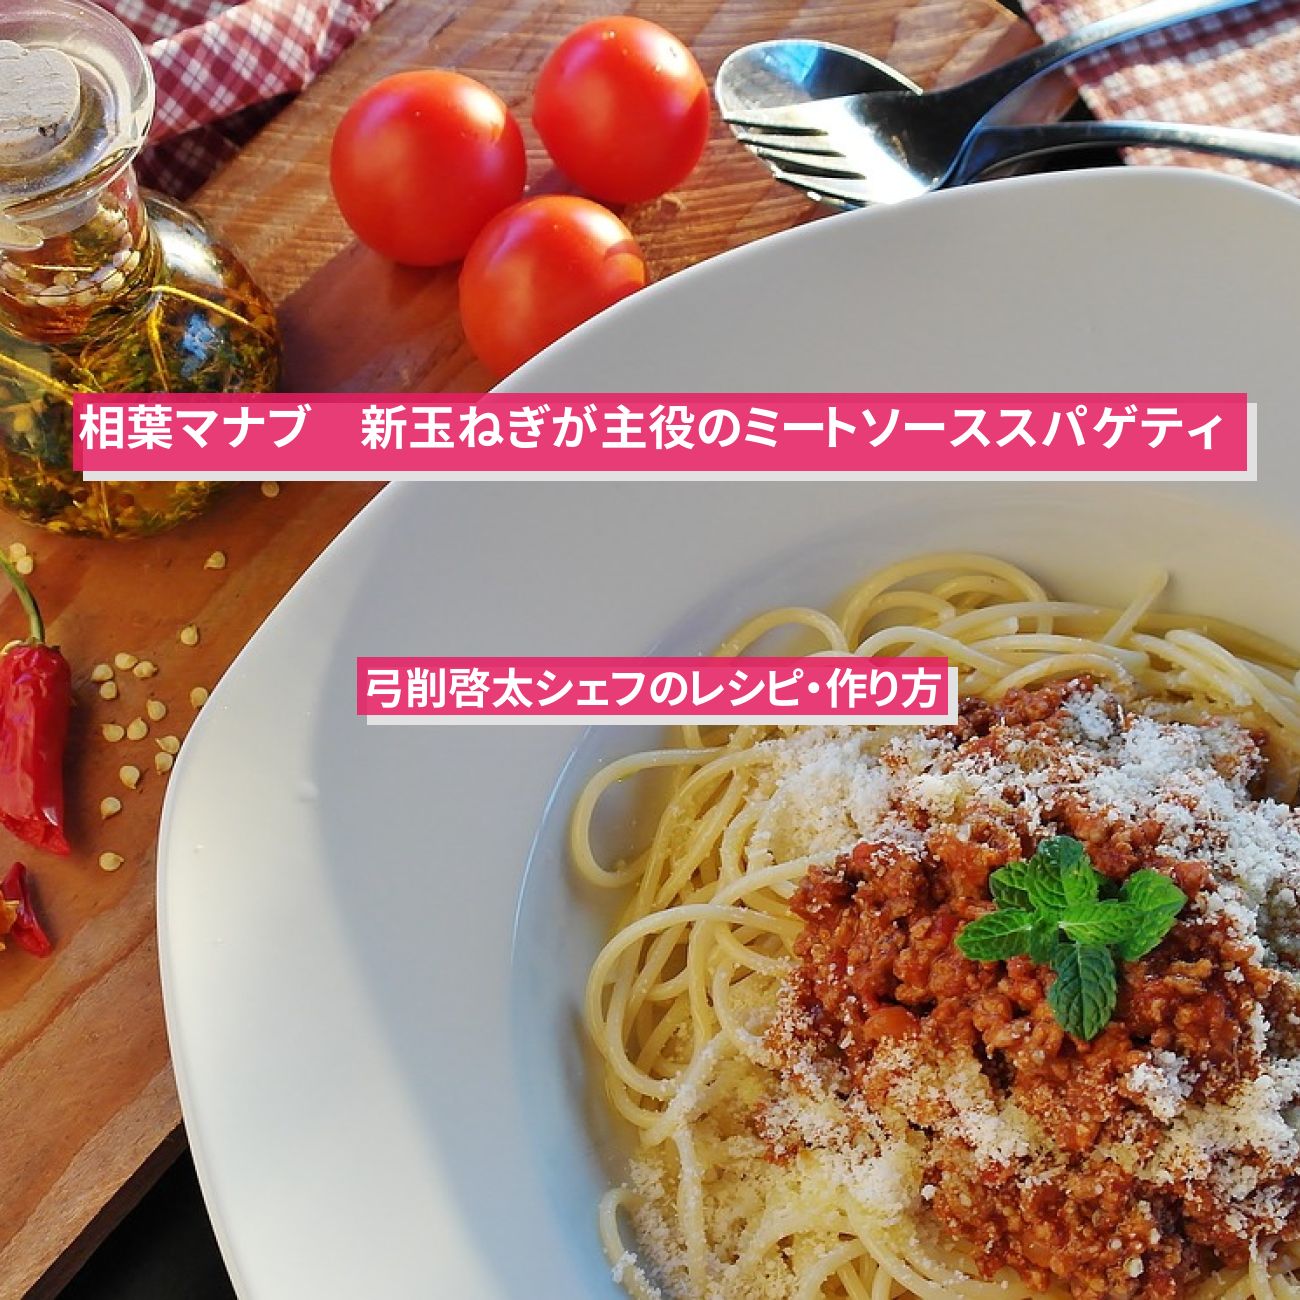 【相葉マナブ】『新玉ねぎが主役のミートソーススパゲティ』弓削啓太シェフのレシピ・作り方